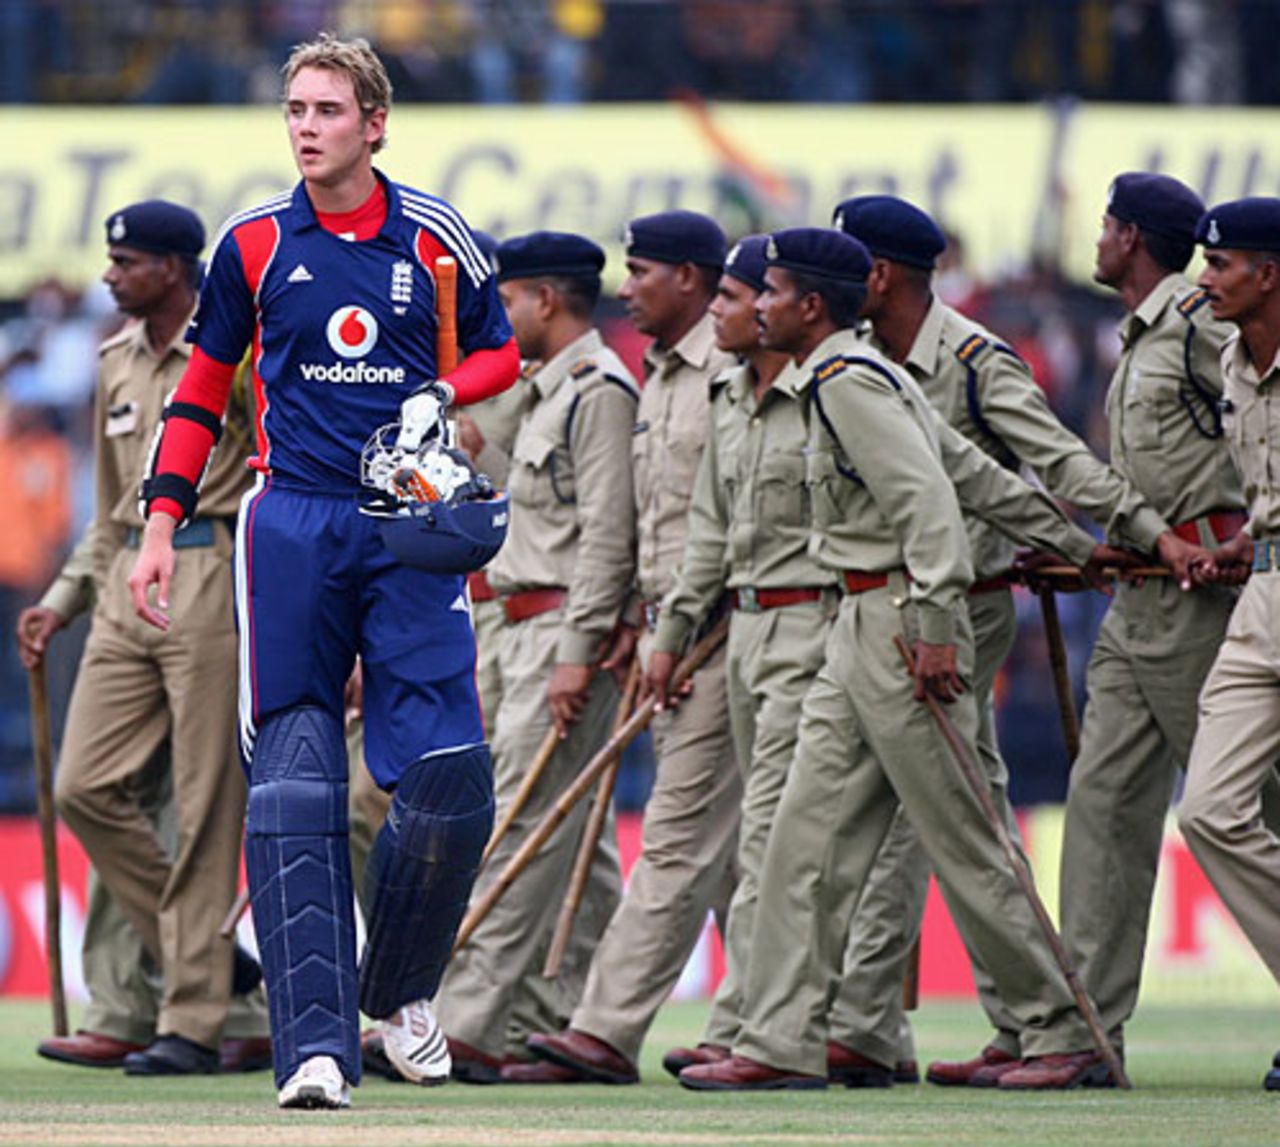 Stuart Broad was the last batsman to be dismissed, India v England, 2nd ODI, Indore, November 17, 2008